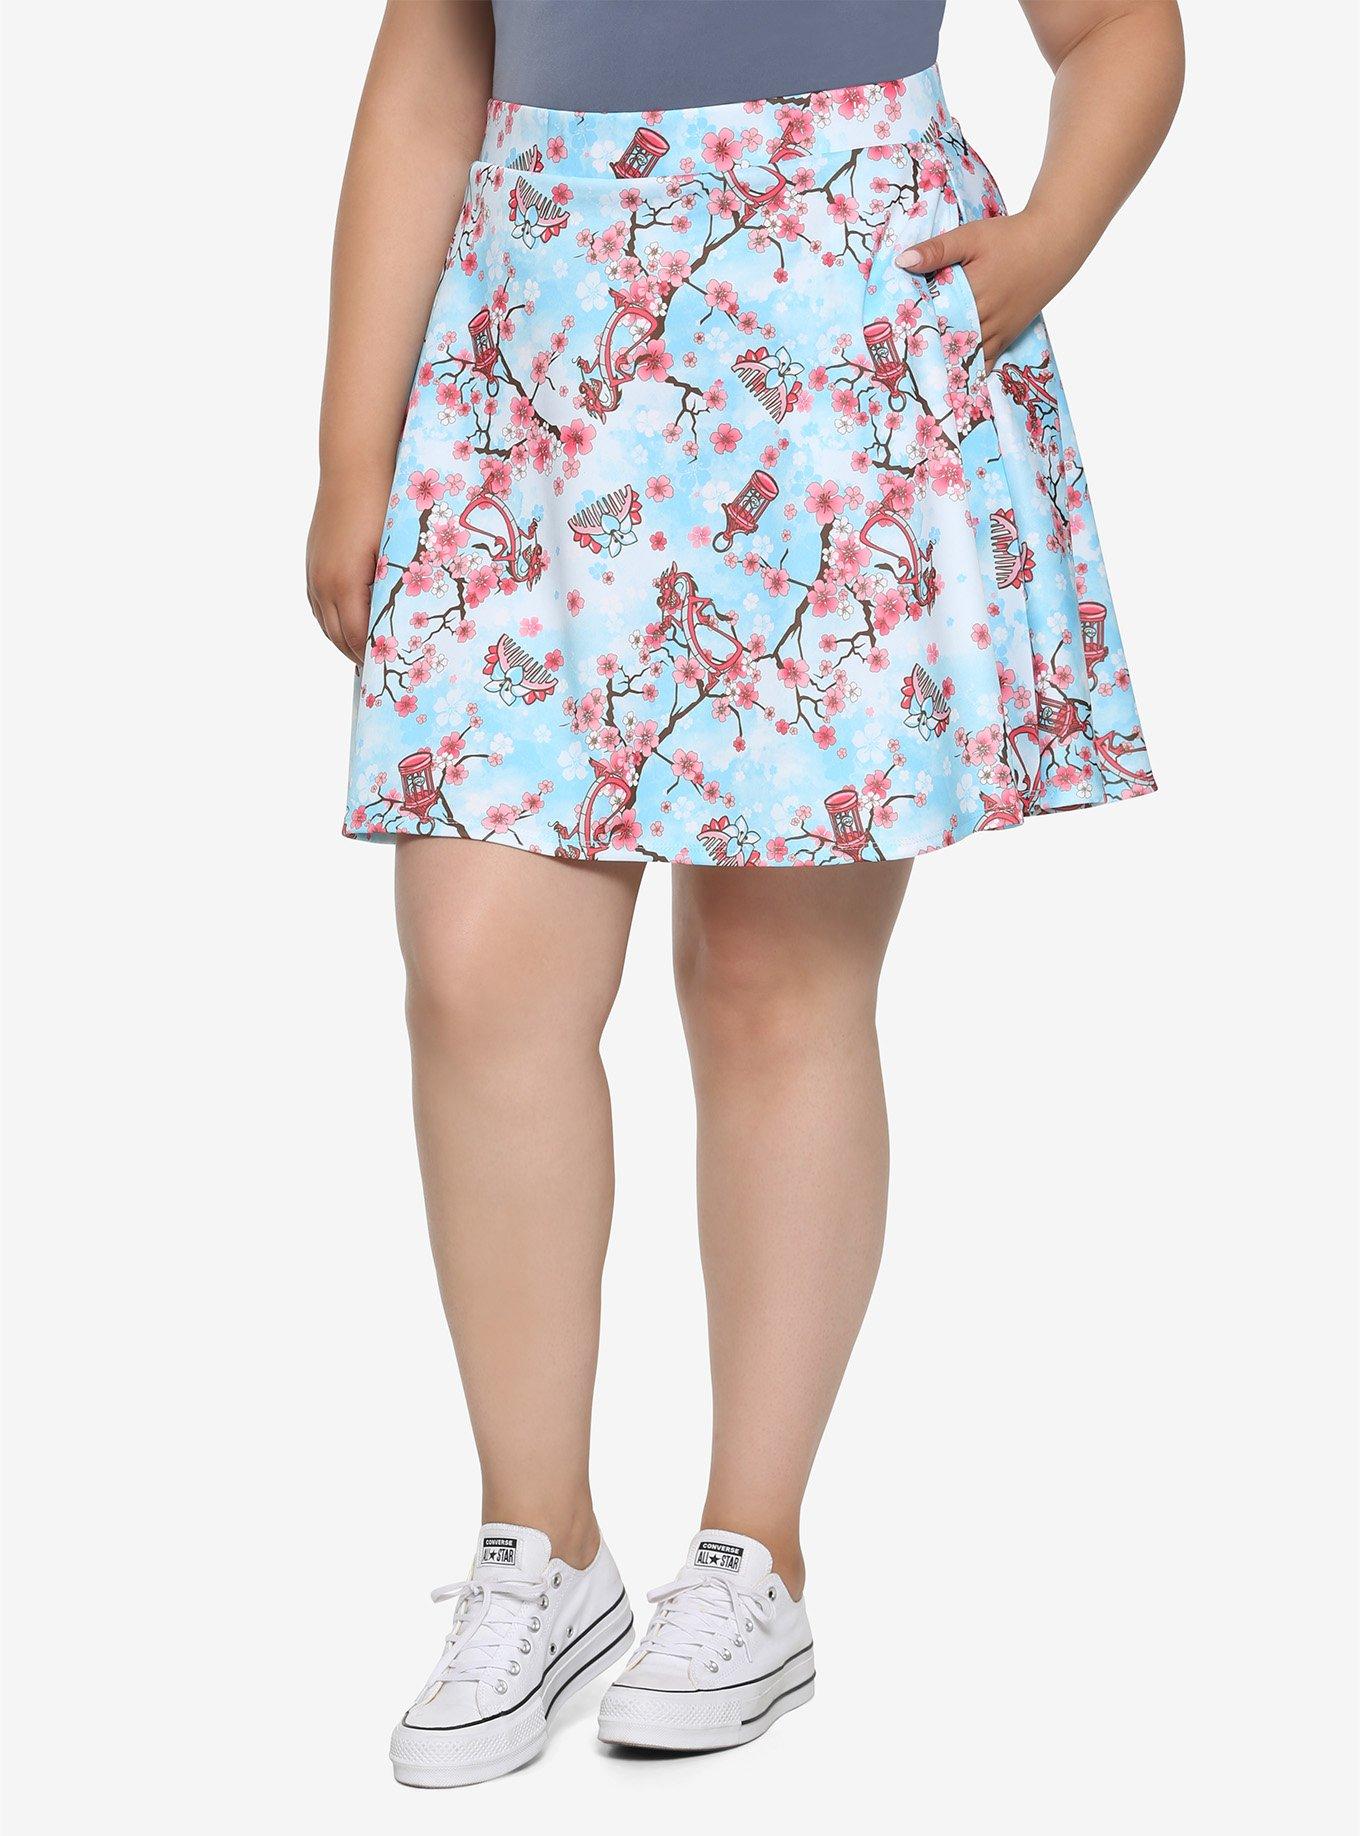 Disney Mulan Cherry Blossom Skater Skirt Plus Size | Hot Topic